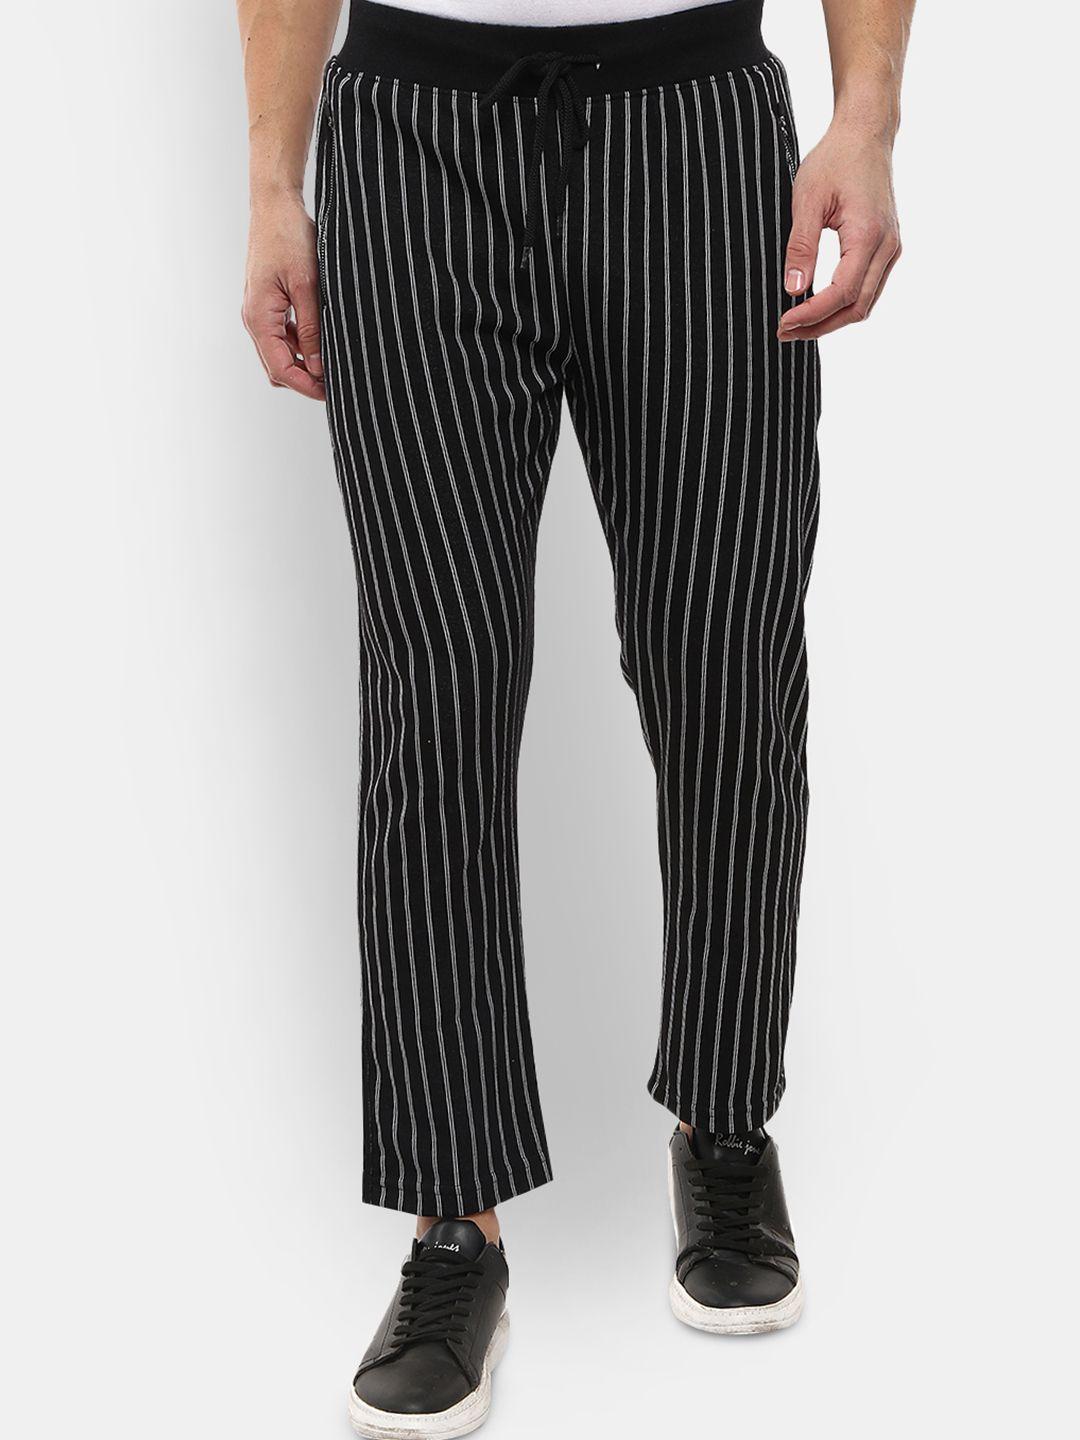 v-mart men black striped jacquard cotton track pant